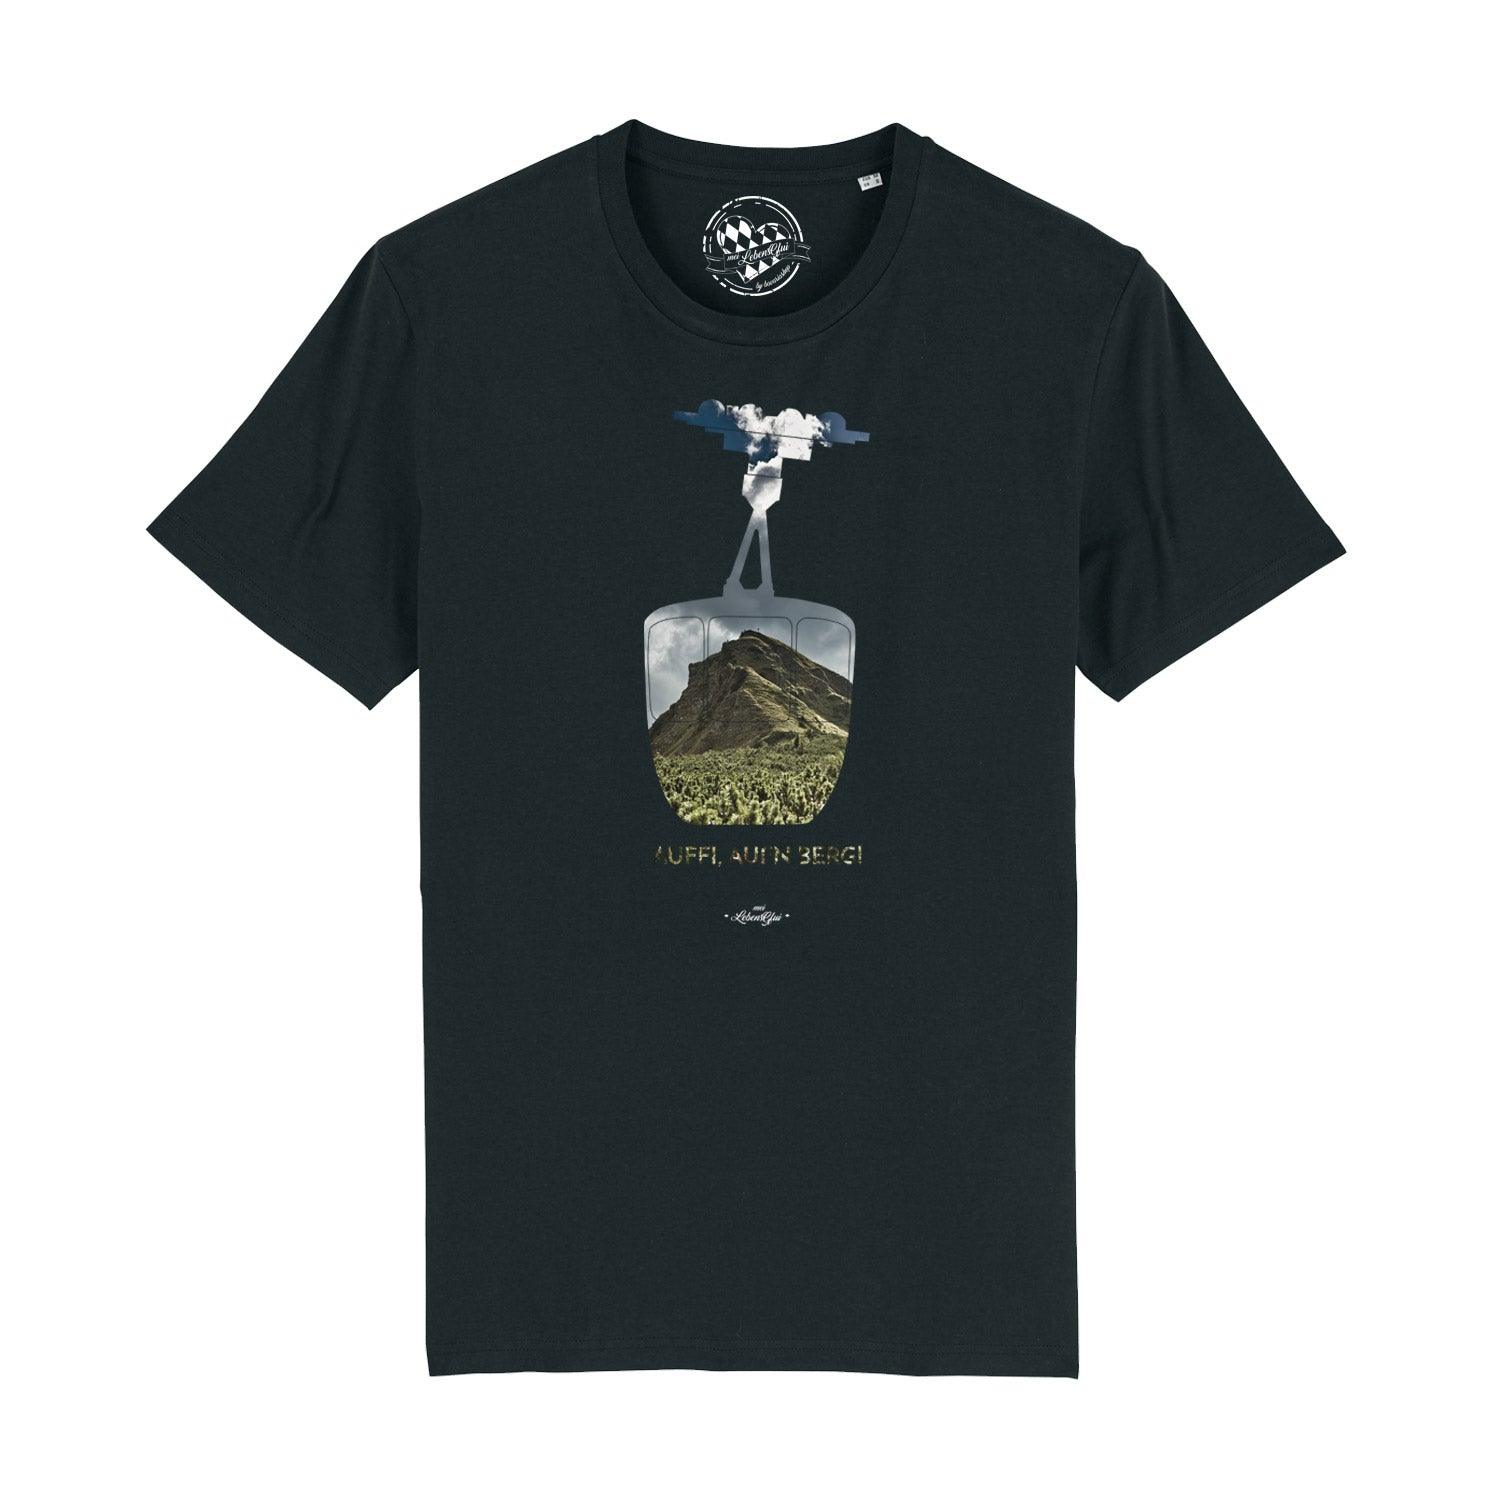 Herren T-Shirt "Auffi, aufn Berg!" - bavariashop - mei LebensGfui